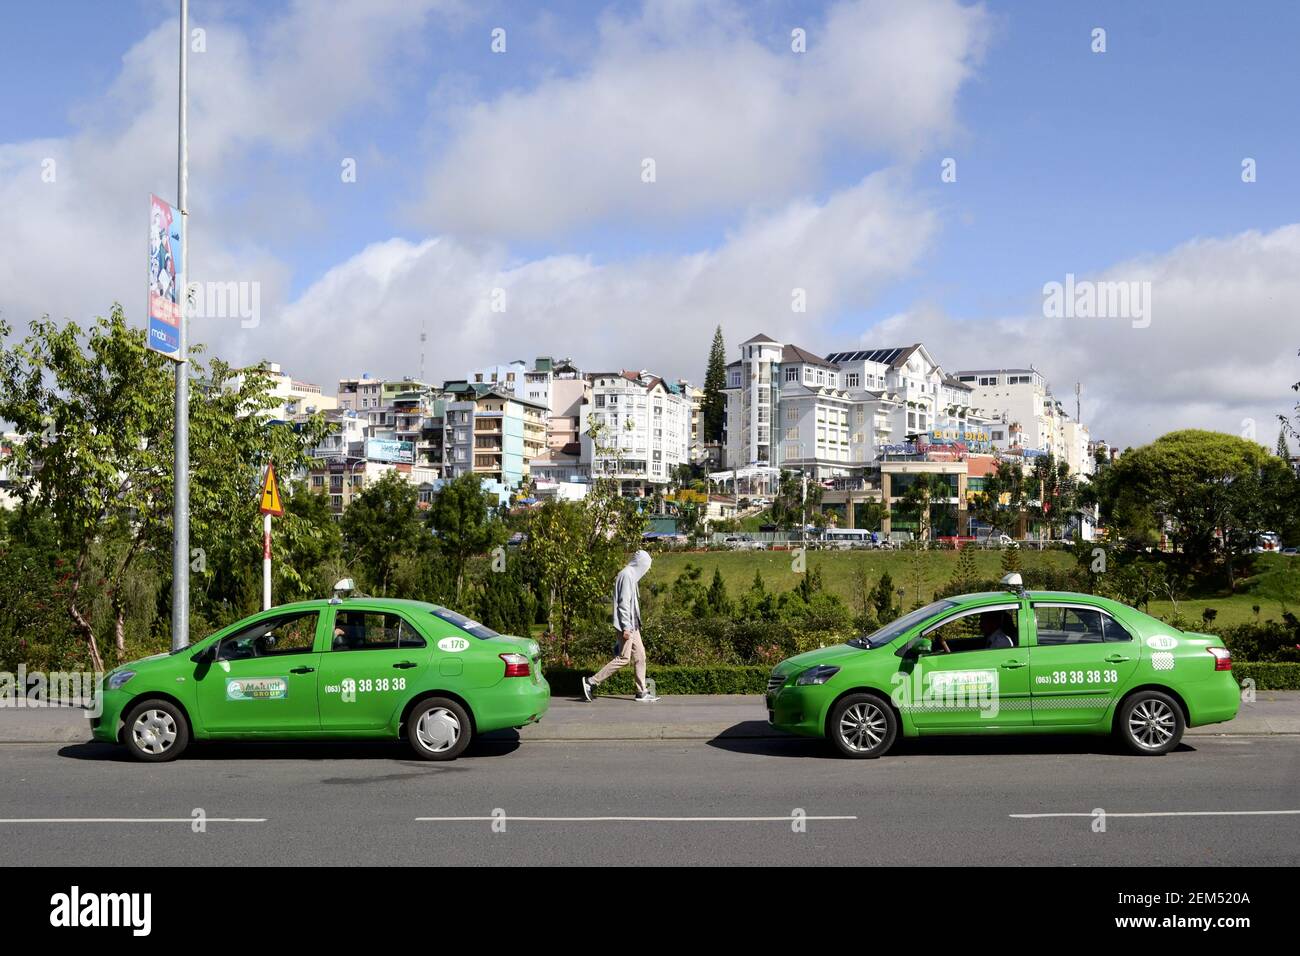 Da Lat, Vietnam - Juli 2015: Zwei ähnliche grüne Taxiwagen auf der Straße und Mann, der zwischen ihnen läuft. Grünes Farbkonzept. Seitenansicht Stockfoto